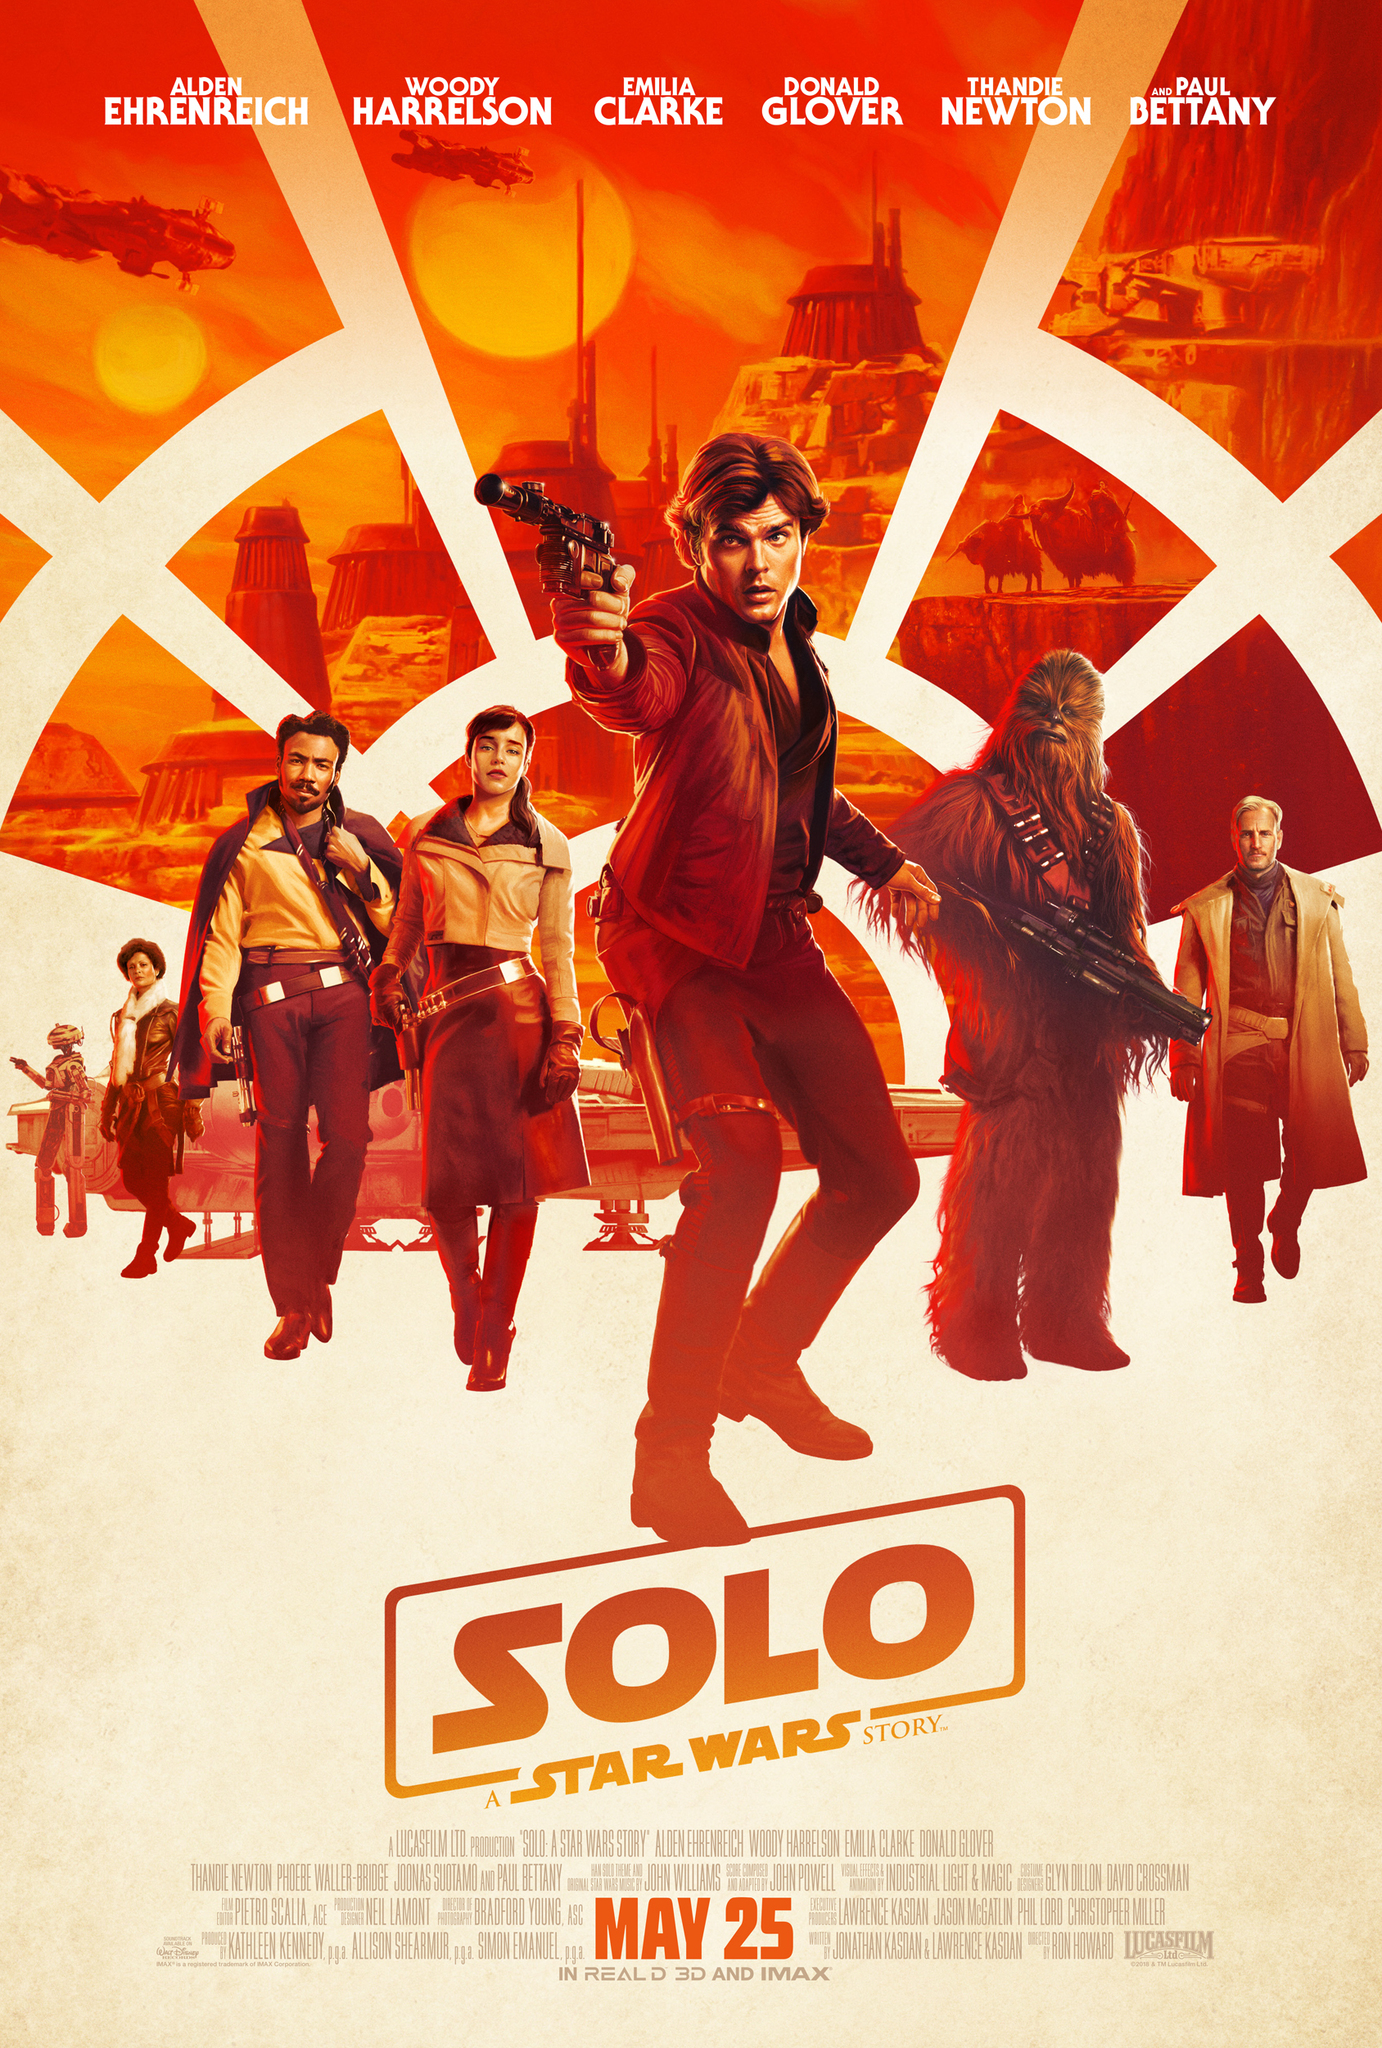 Han Solo A Star Wars Story (2018) ฮาน โซโล ตำนานสตาร์ วอร์ส Alden Ehrenreich